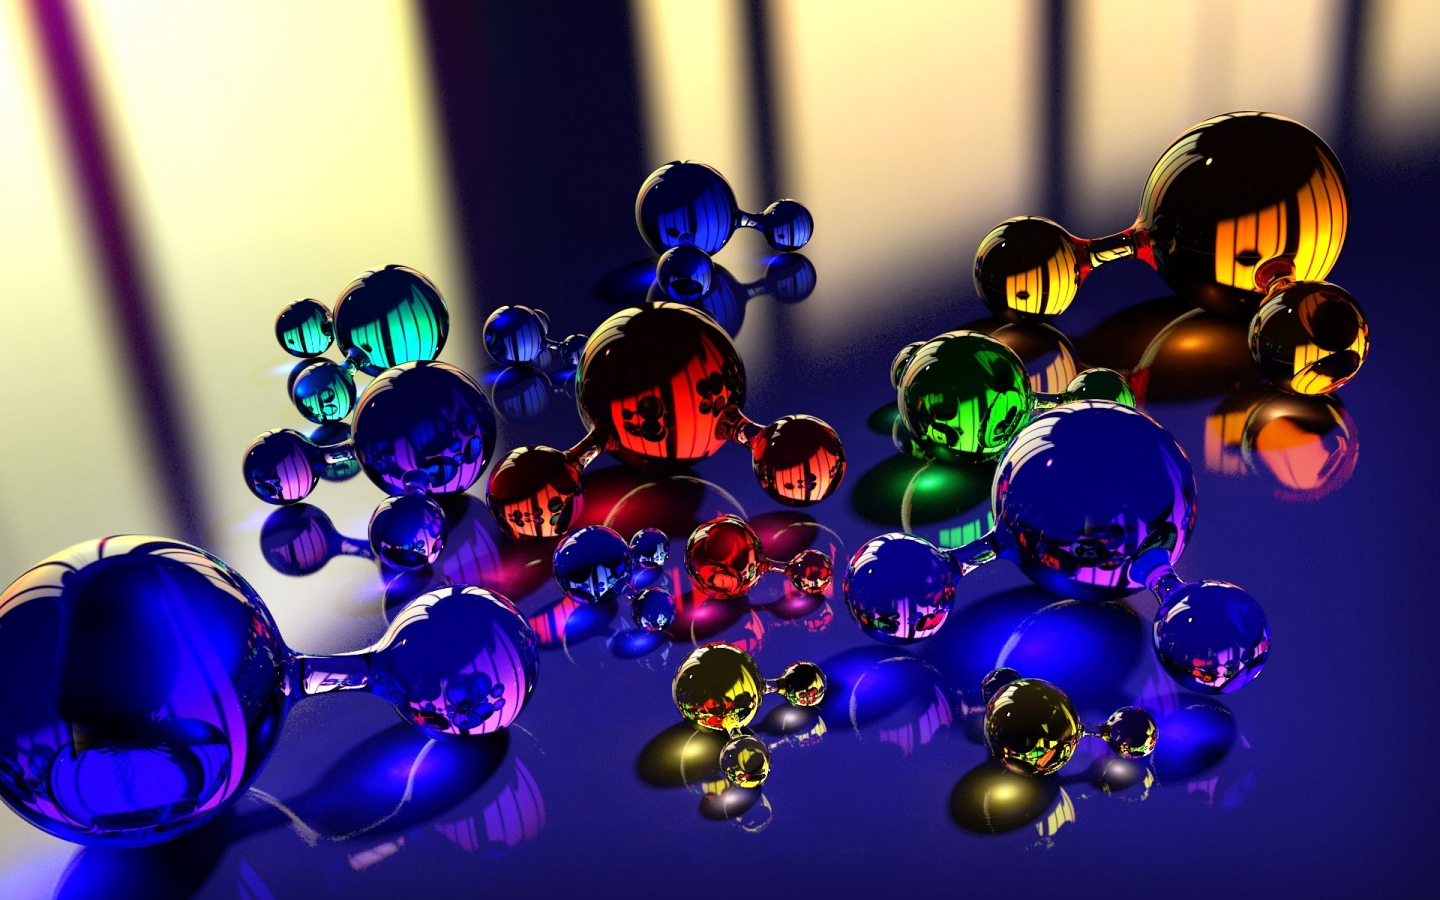 Molecule Stress Ball for 1440 x 900 widescreen resolution